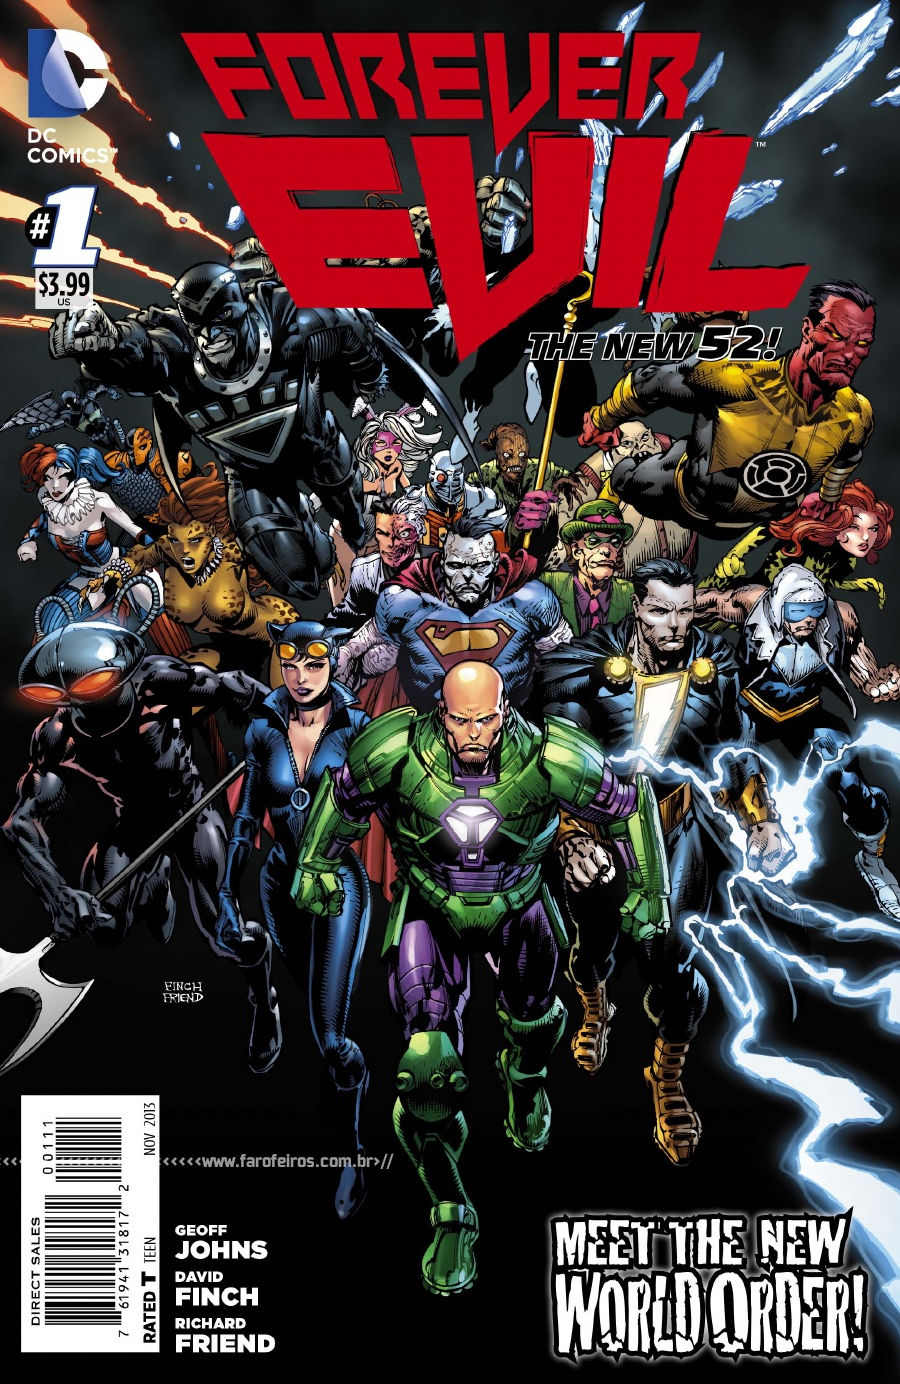 Preview de Forever Evil #1 - DC Comics - Blog Farofeiros